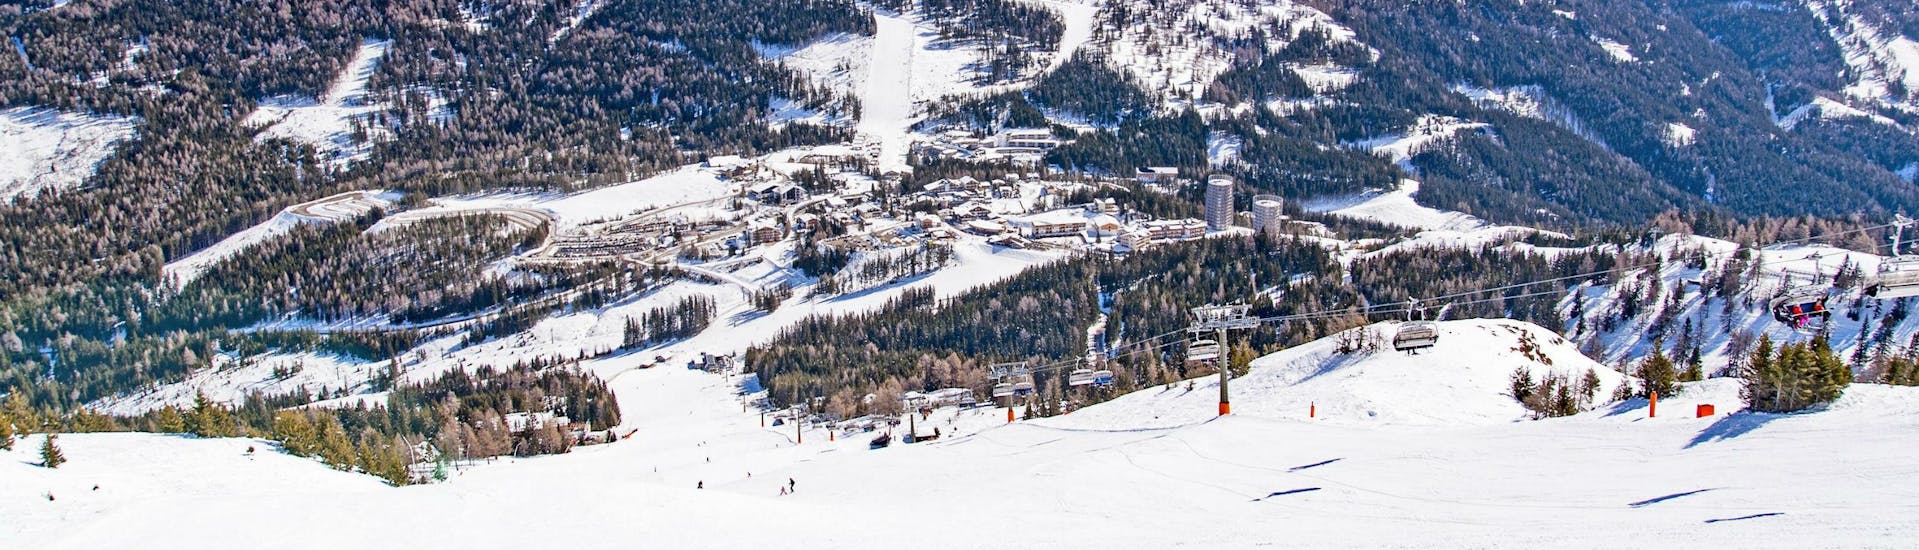 Ein Blick auf die schneebedeckten Pisten am Katschberg, wo Skifahrer mit einer der örtlichen Skischulen einen Skikurs buchen können.